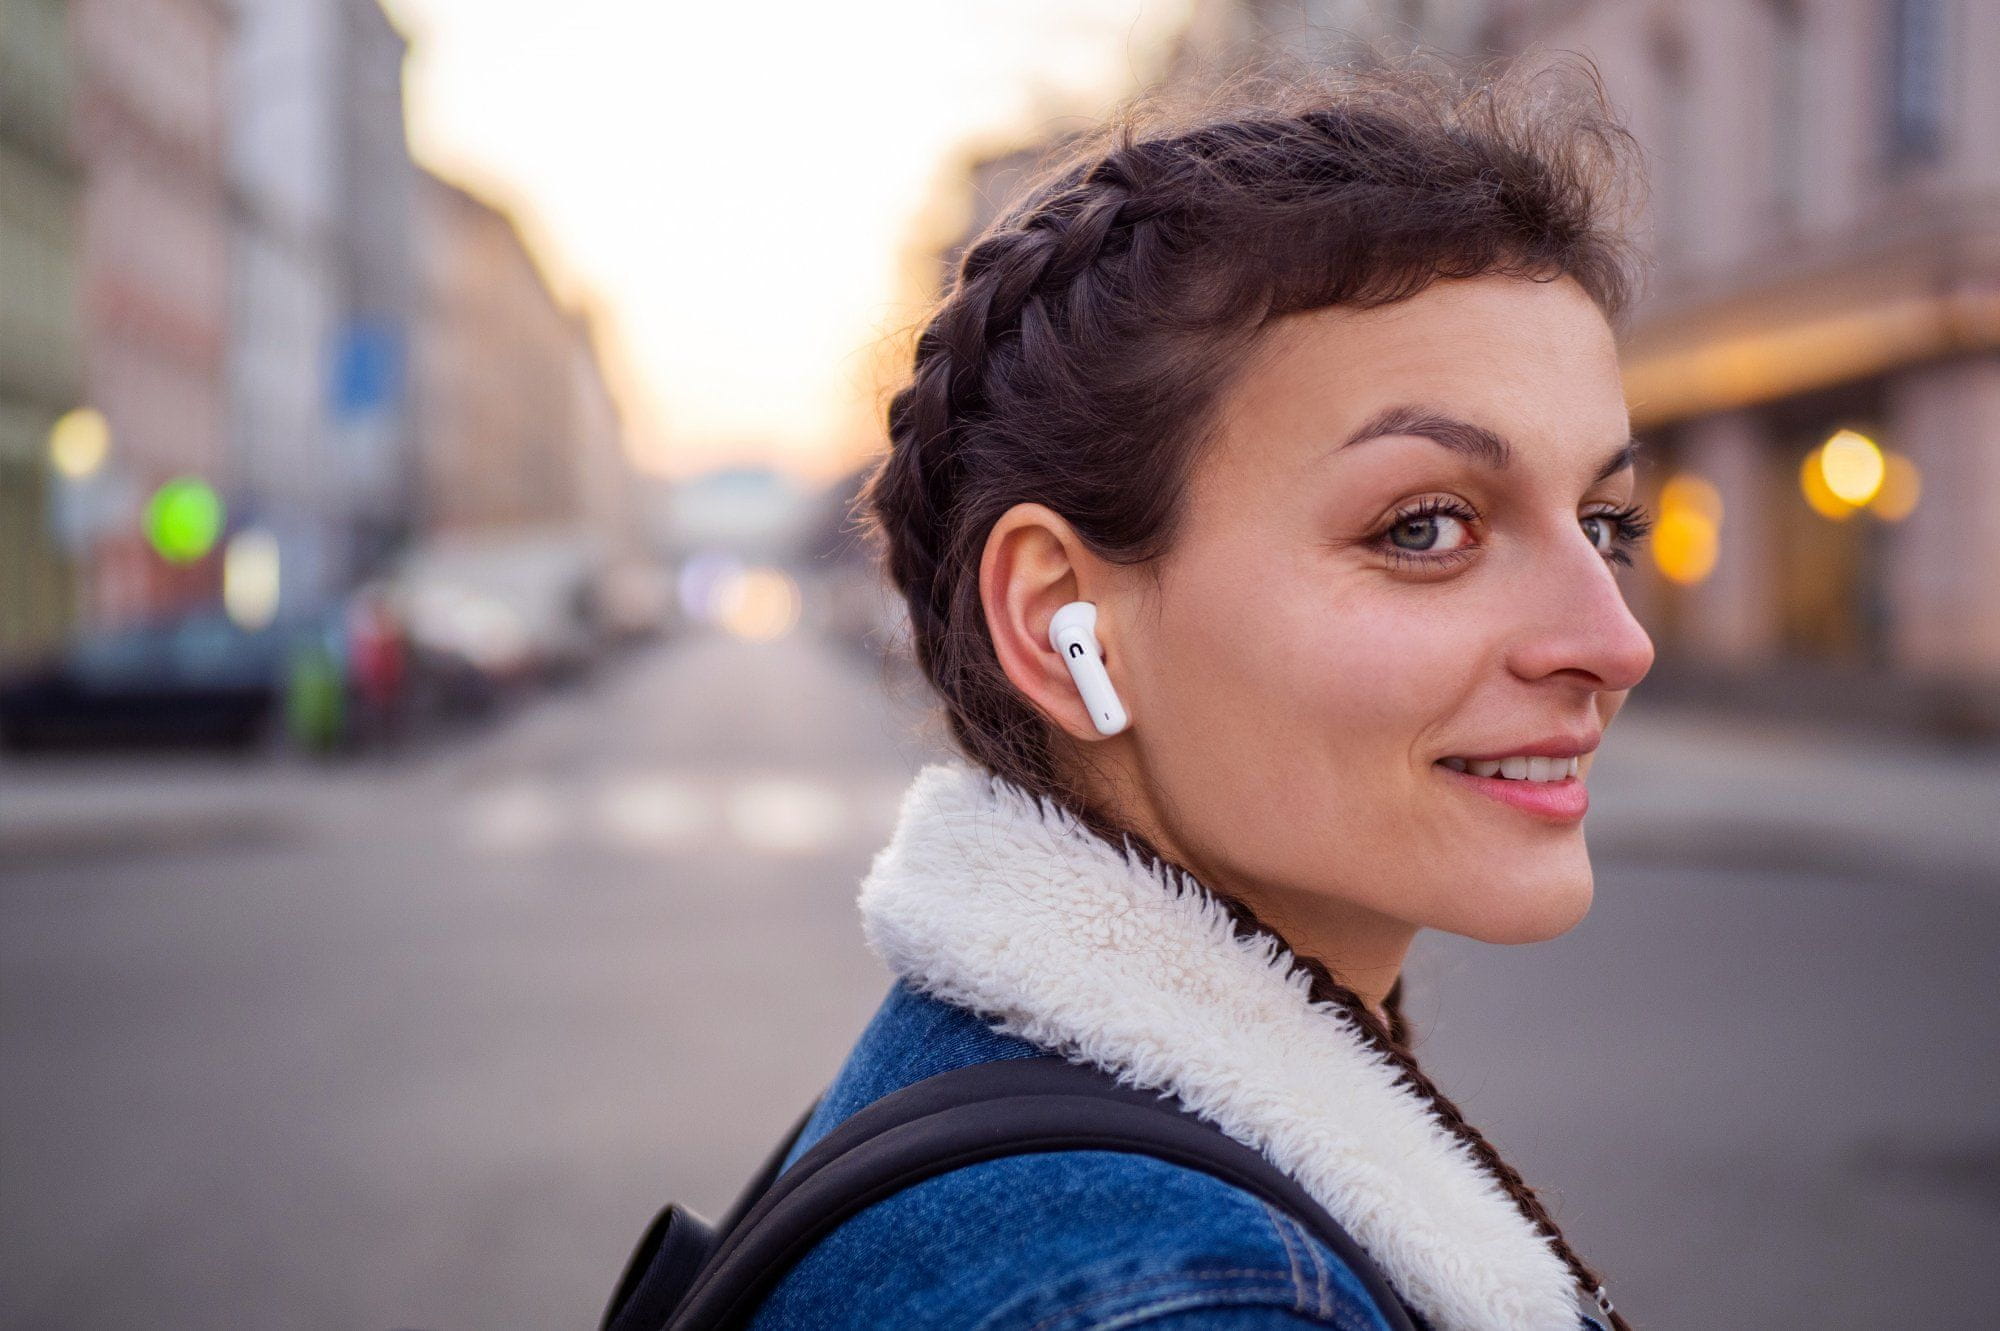  Bluetooth 5.0 fülhallgató niceboy hive pins töltőtok összesen 18 ó üzemidő egy feltöltéssel 4 ó ipx4 vízállóság érintésvezérlés közvetlenül a fülhallgatón hangsegéd támogatás handsfree mikrofon 